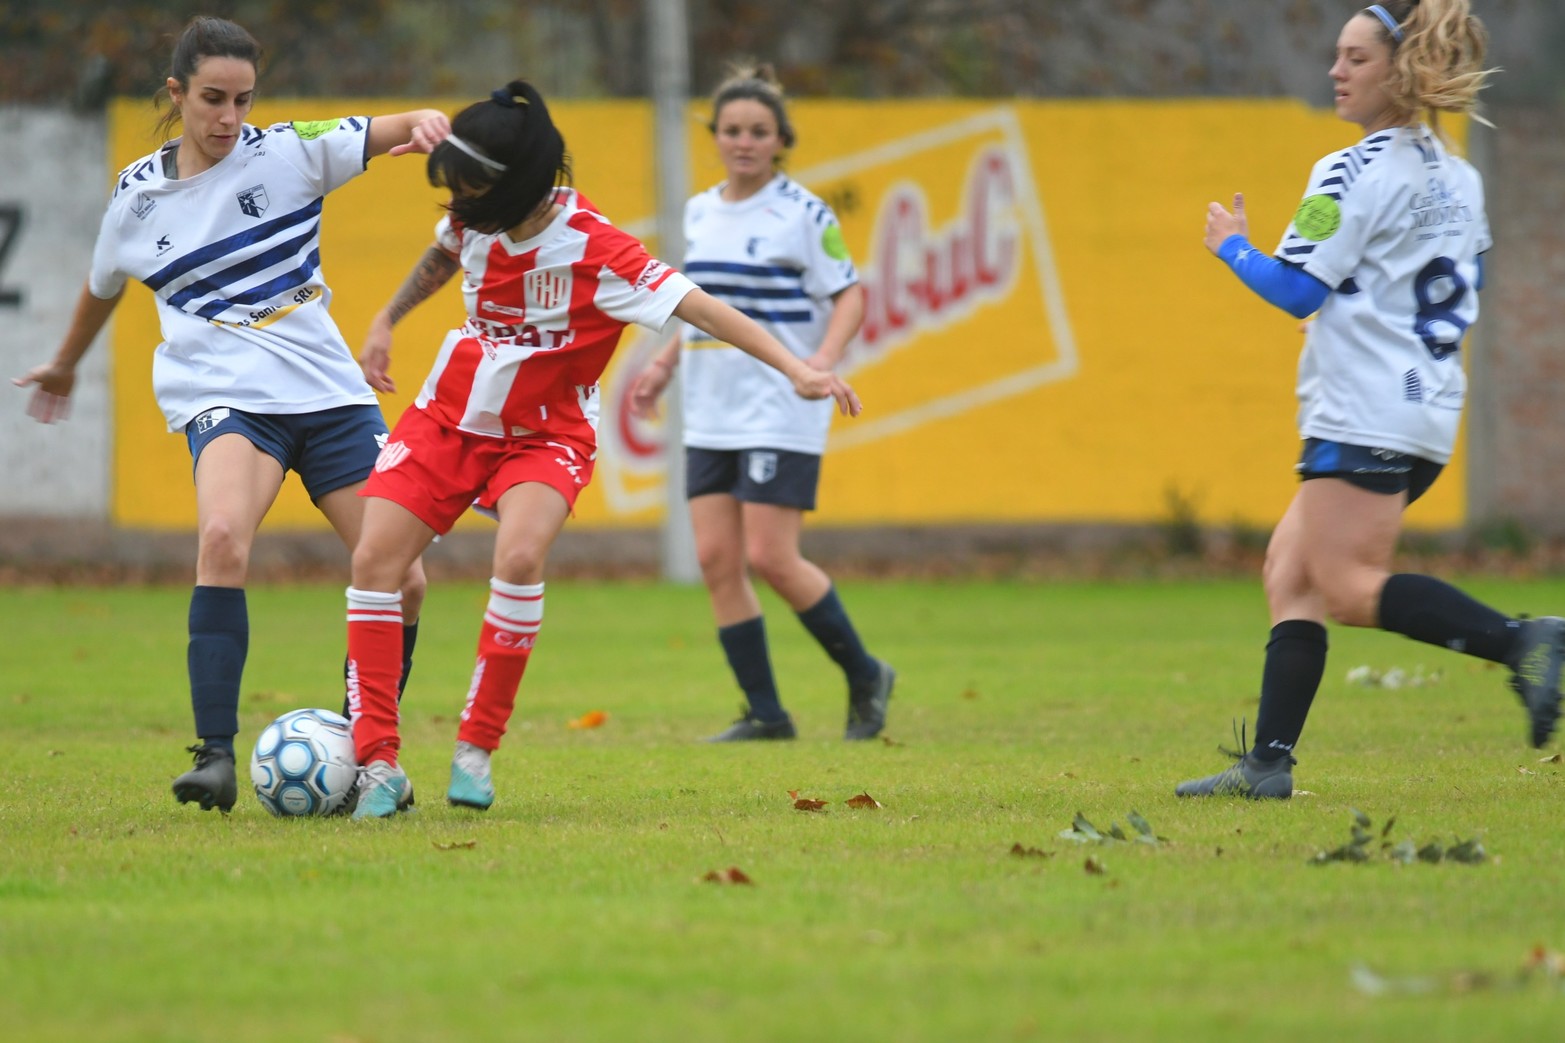 Copa Santa Fe en el fútbol femenino. Unión le ganó 3 a 1 a La Salle en el partido de ida.